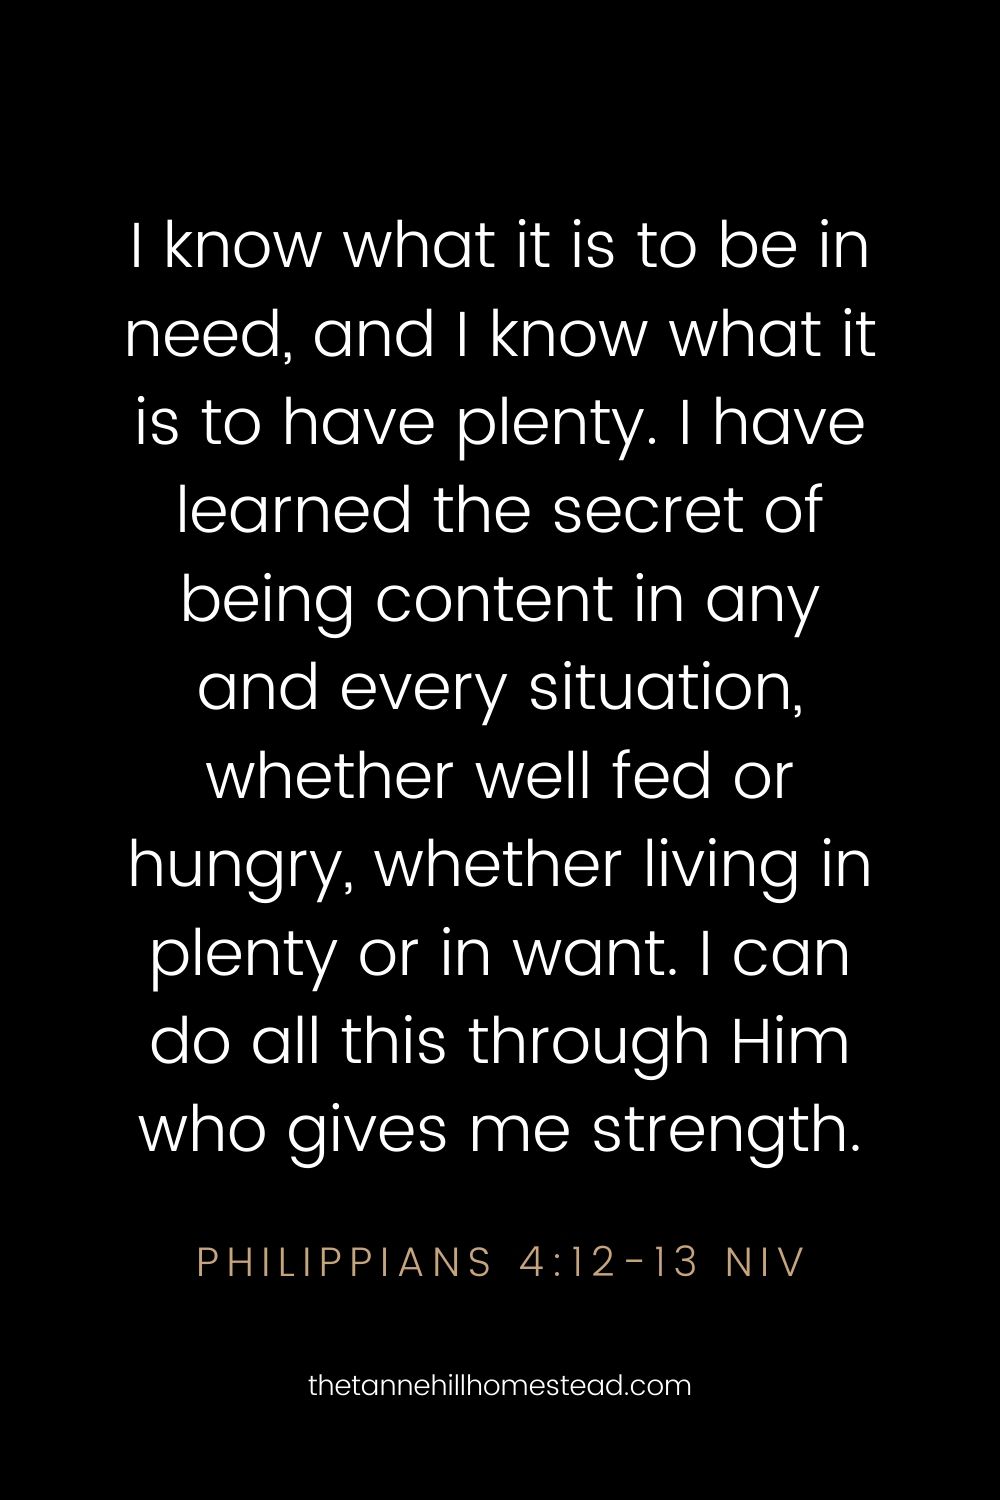 Philippians 4:12-13 - Bible verses about contentment